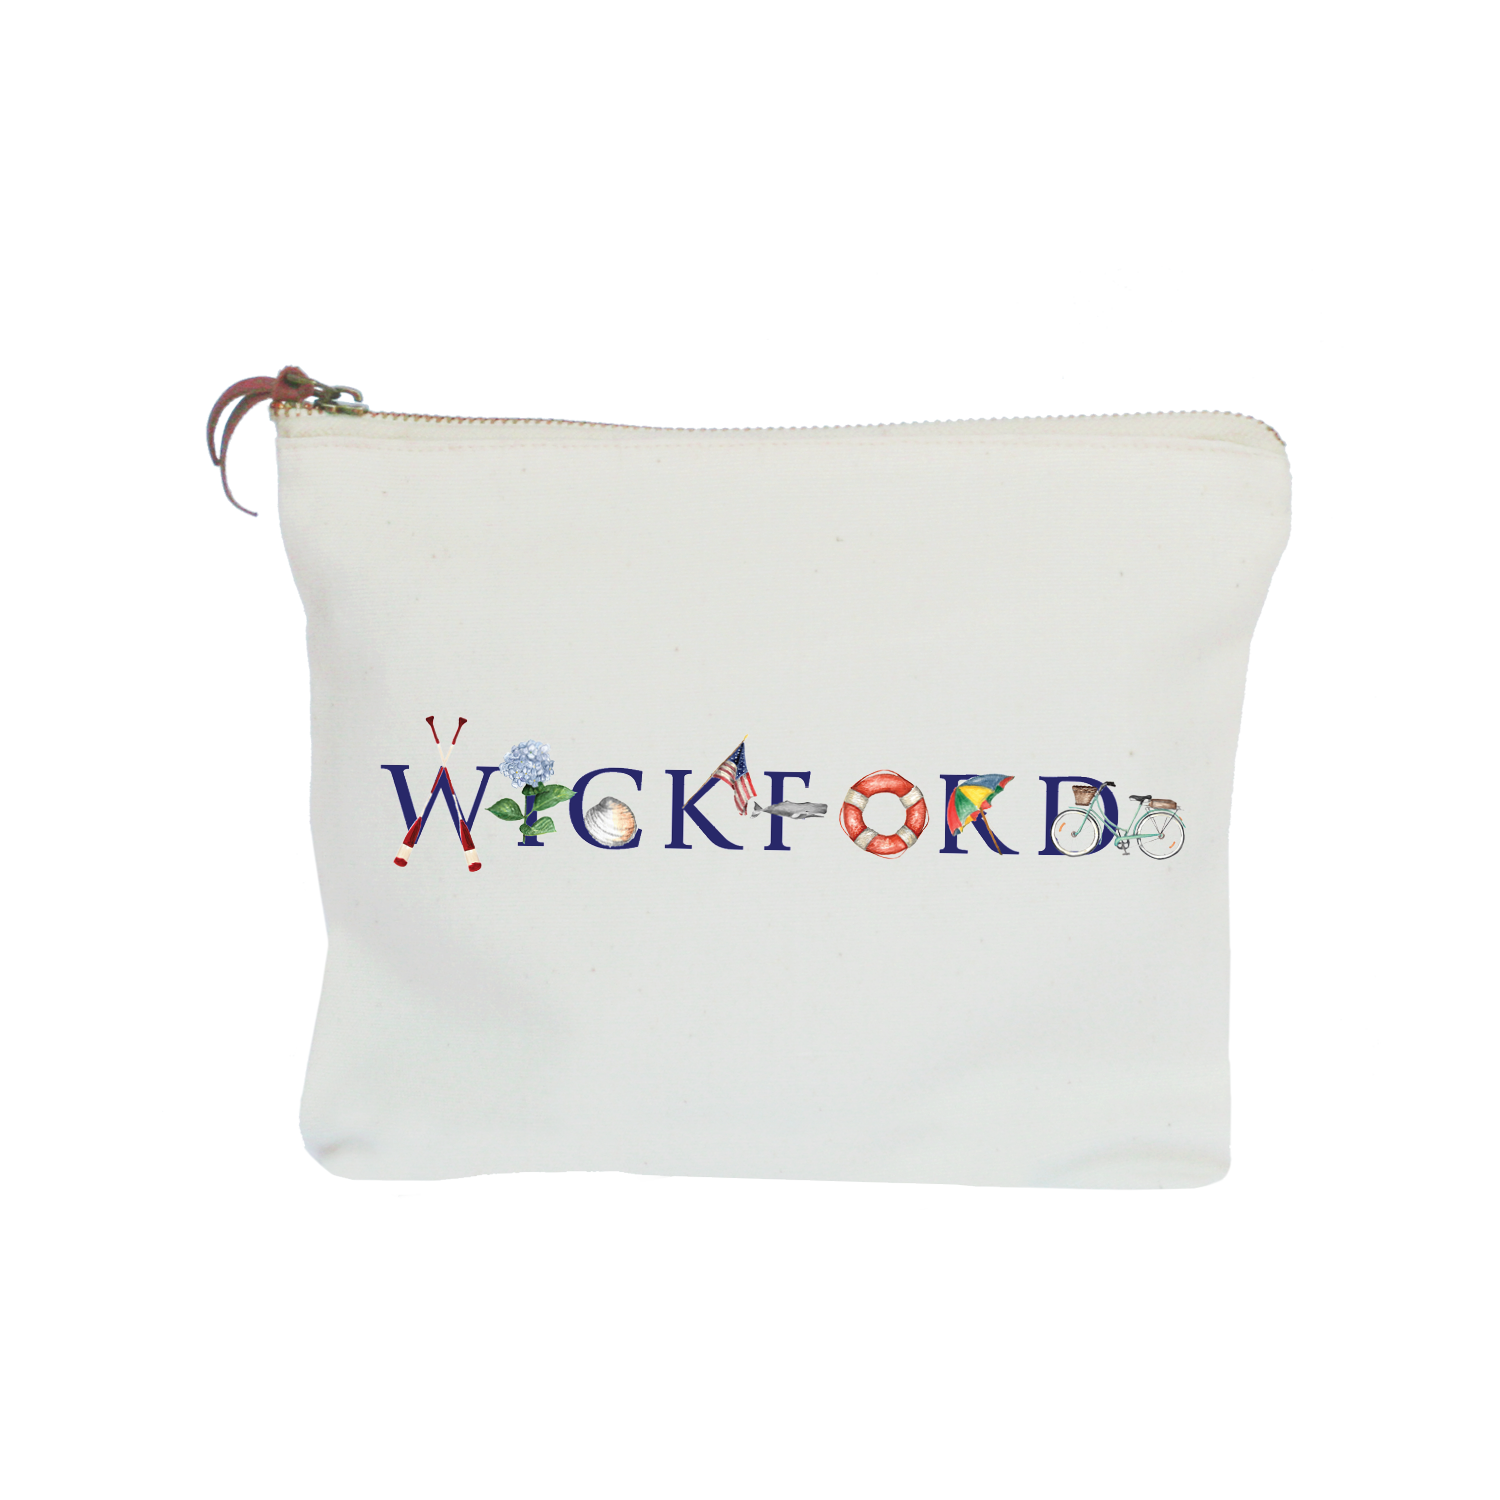 wickford zipper pouch